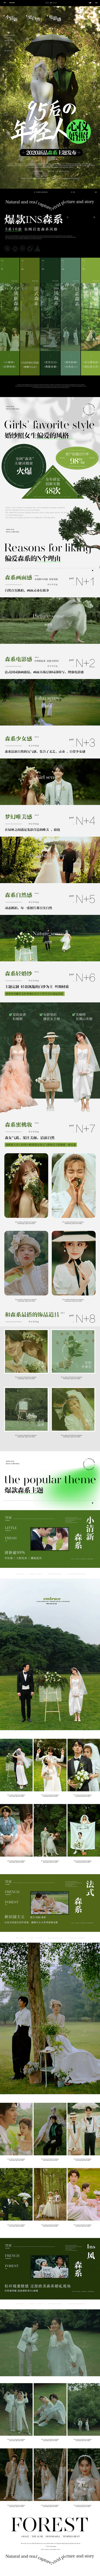 #成都金夫人婚纱摄影网页专题设计#风格包...